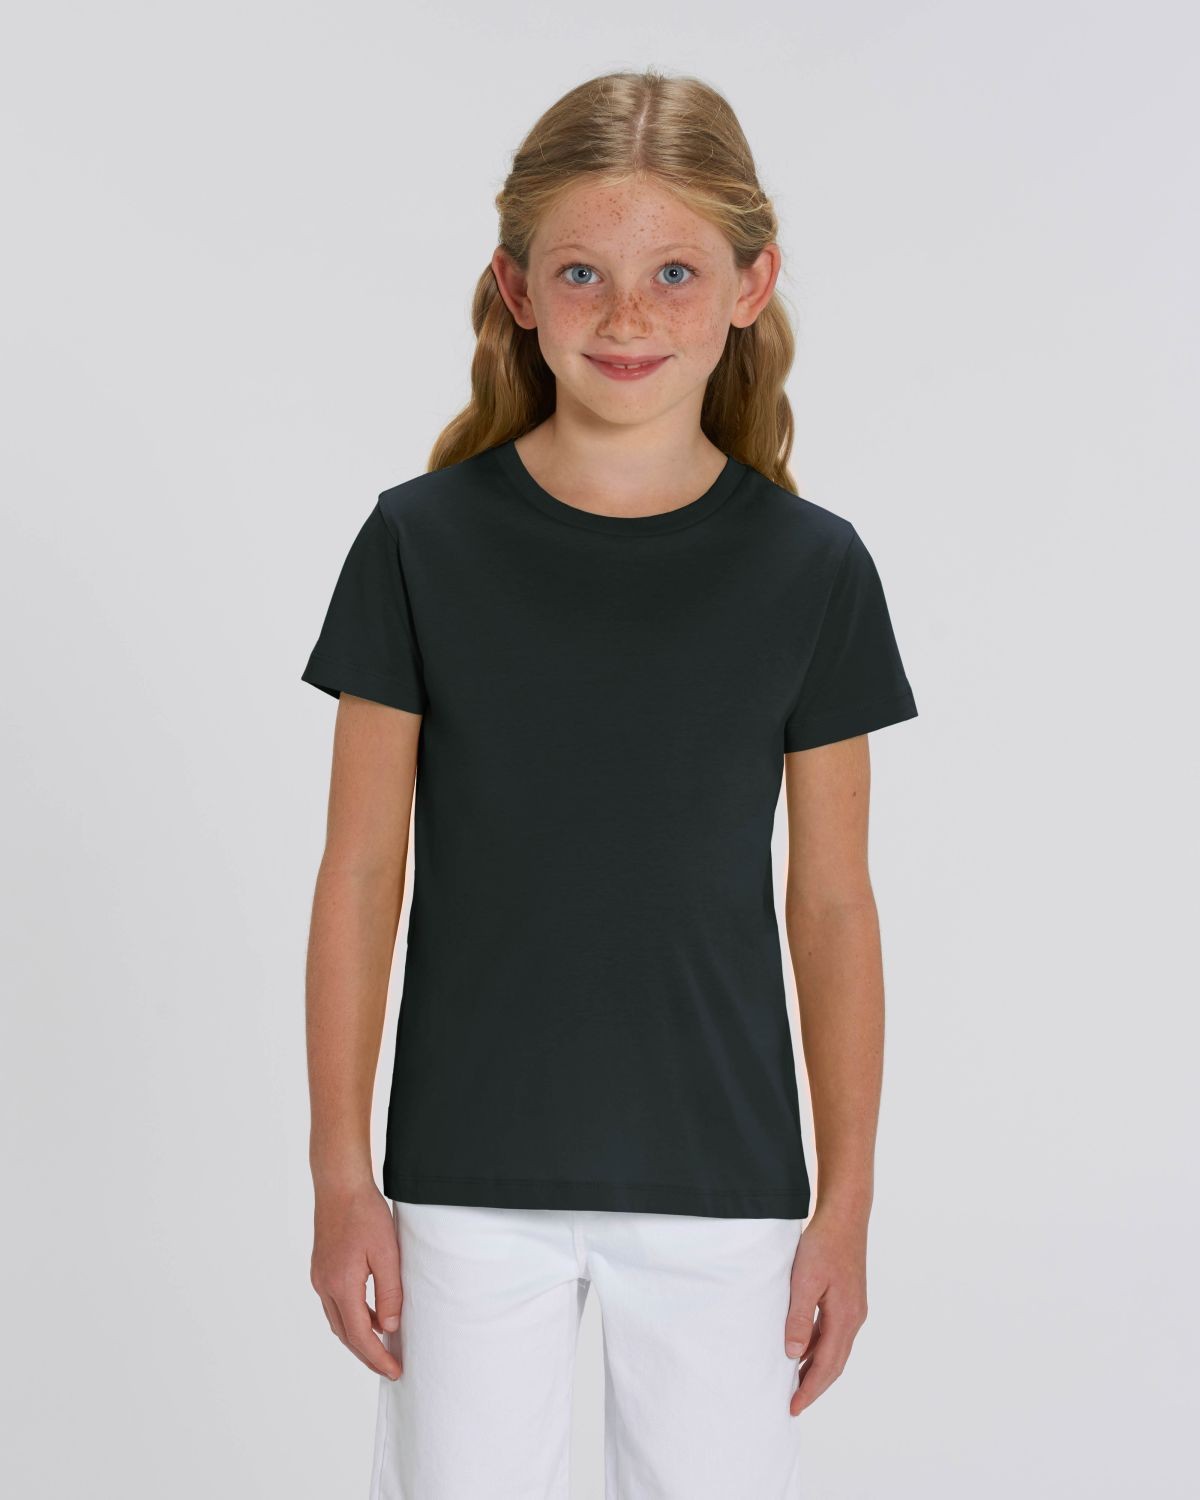 321,465 en la categoría «Camiseta negra niña» de fotos e imágenes de stock  libres de regalías